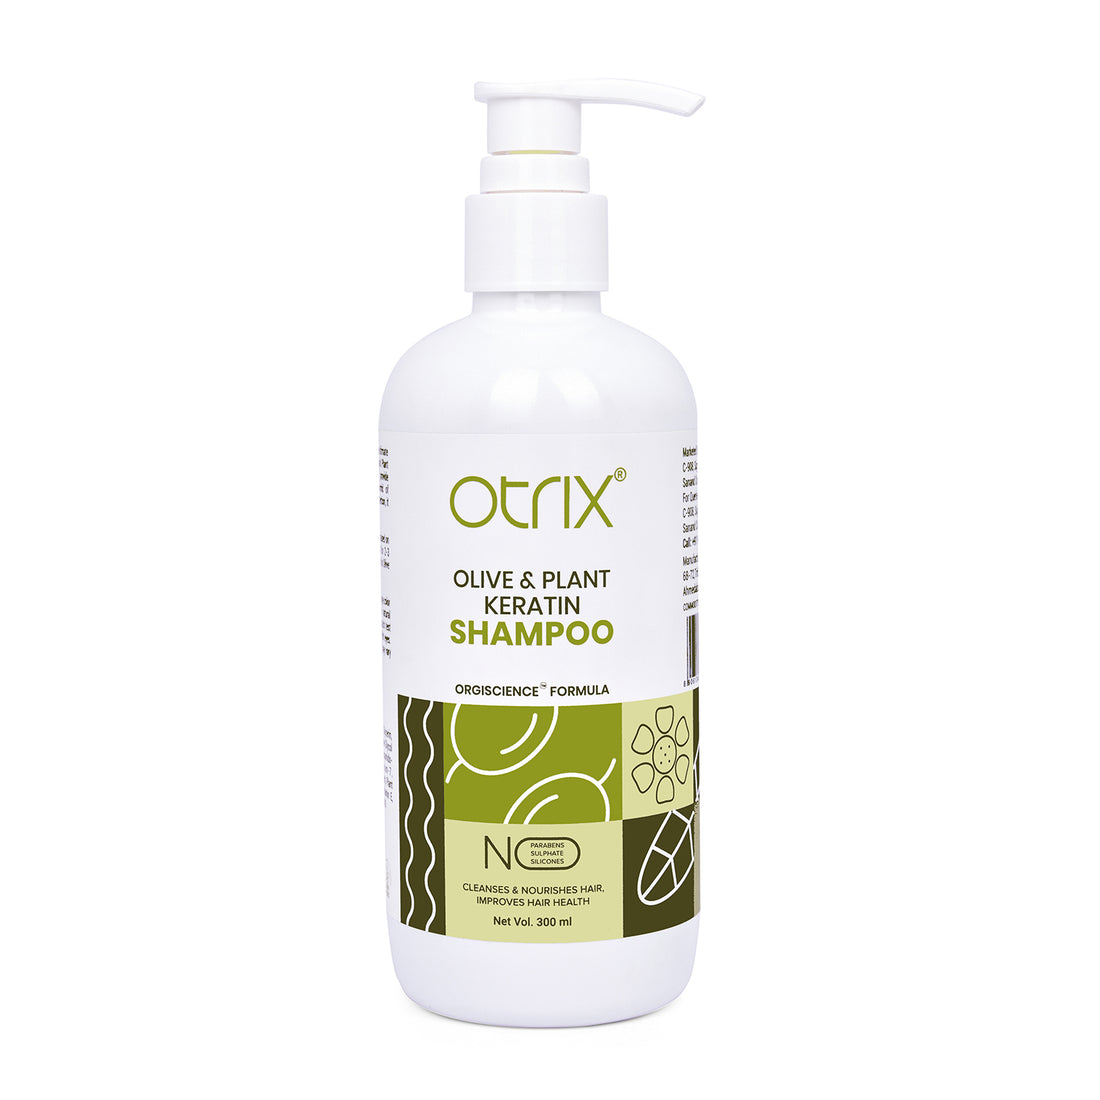 Olive & Plant Keratin Shampoo - 300ml